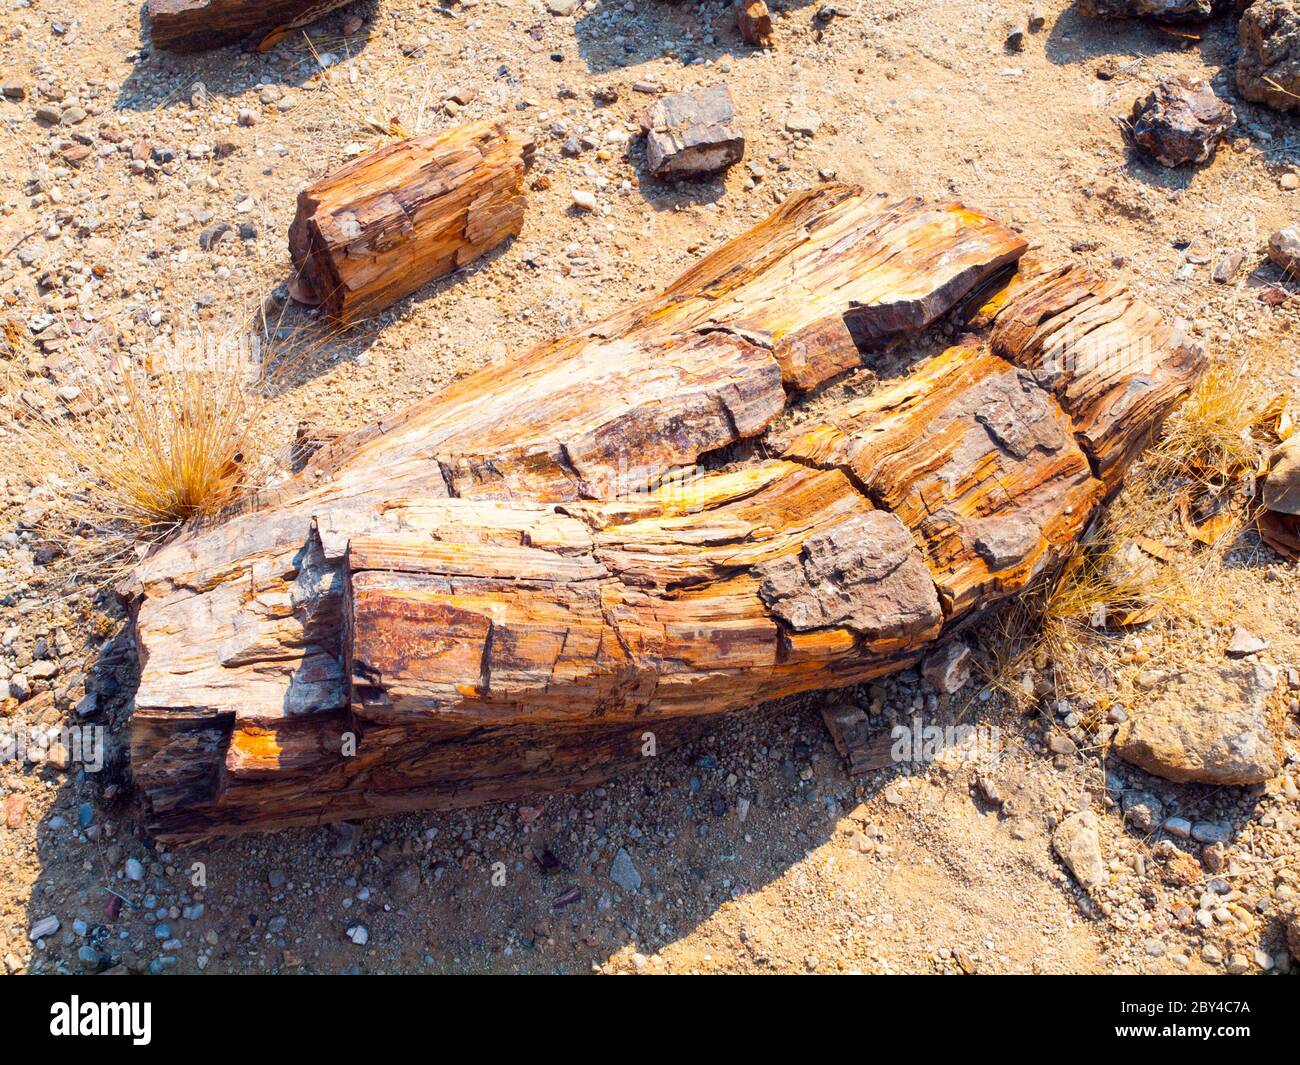 Un morceau de bois pétrifié, forêt pétrifiée à Damaraland, Namibie, Afrique. Banque D'Images